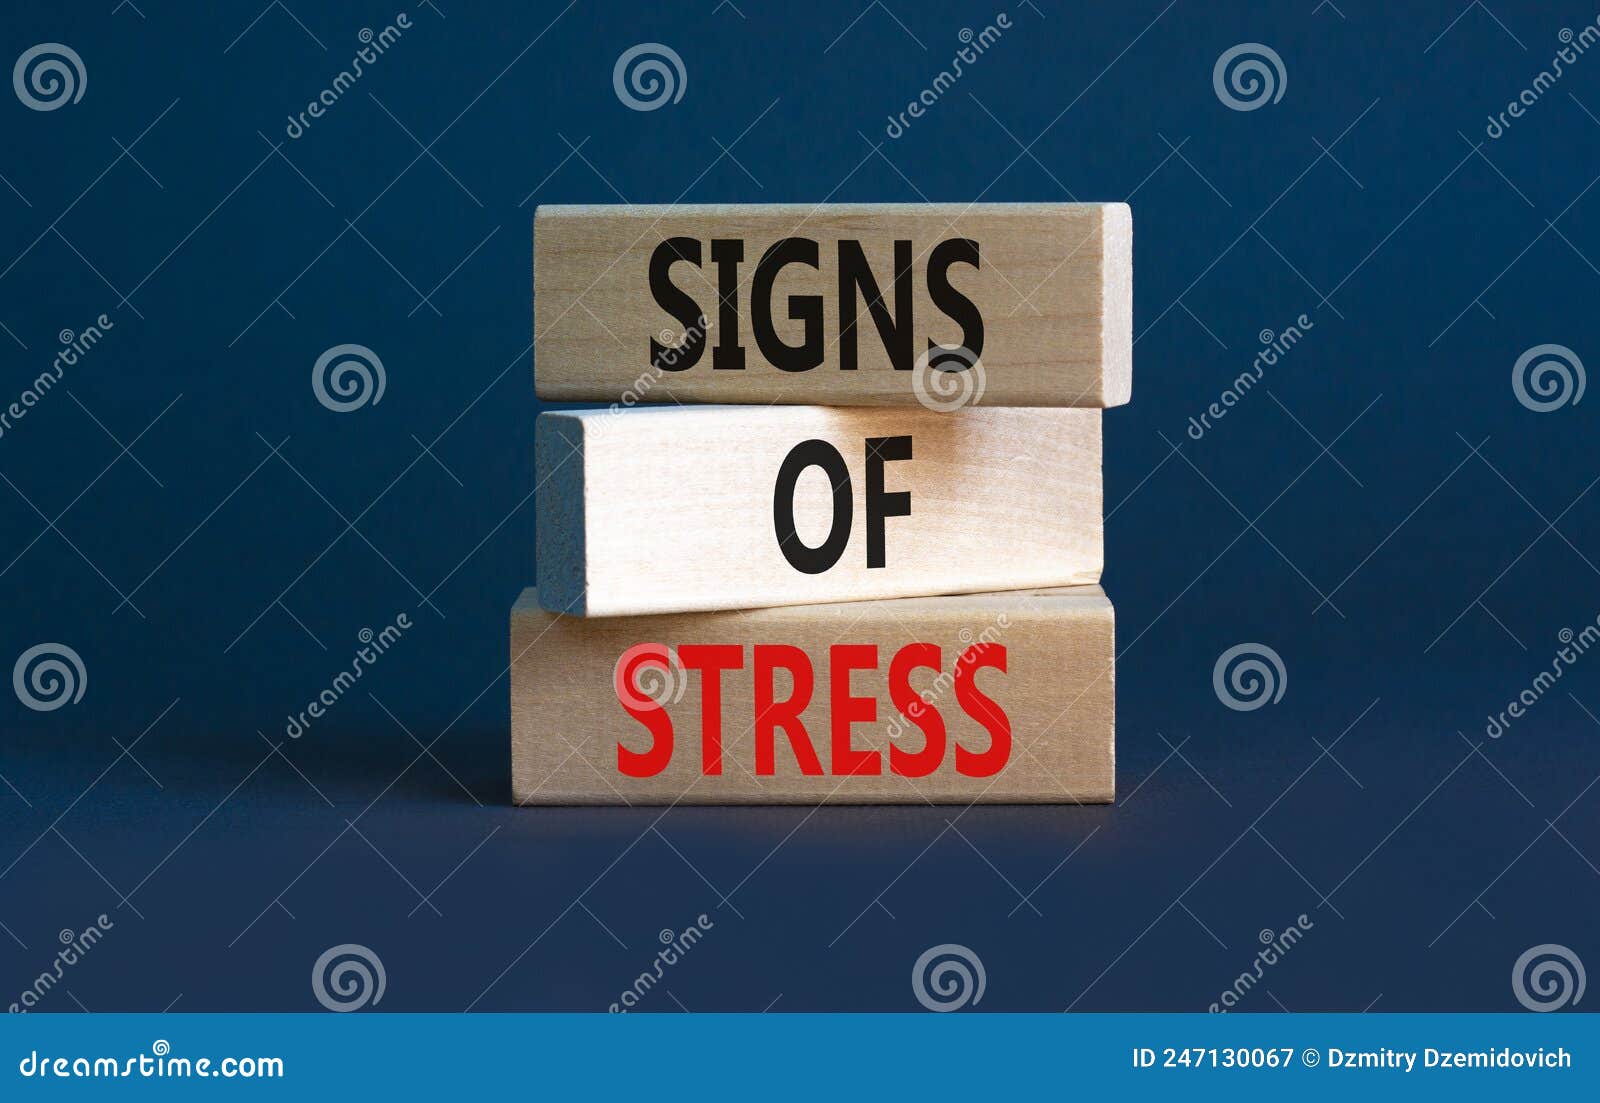 Signes de stress